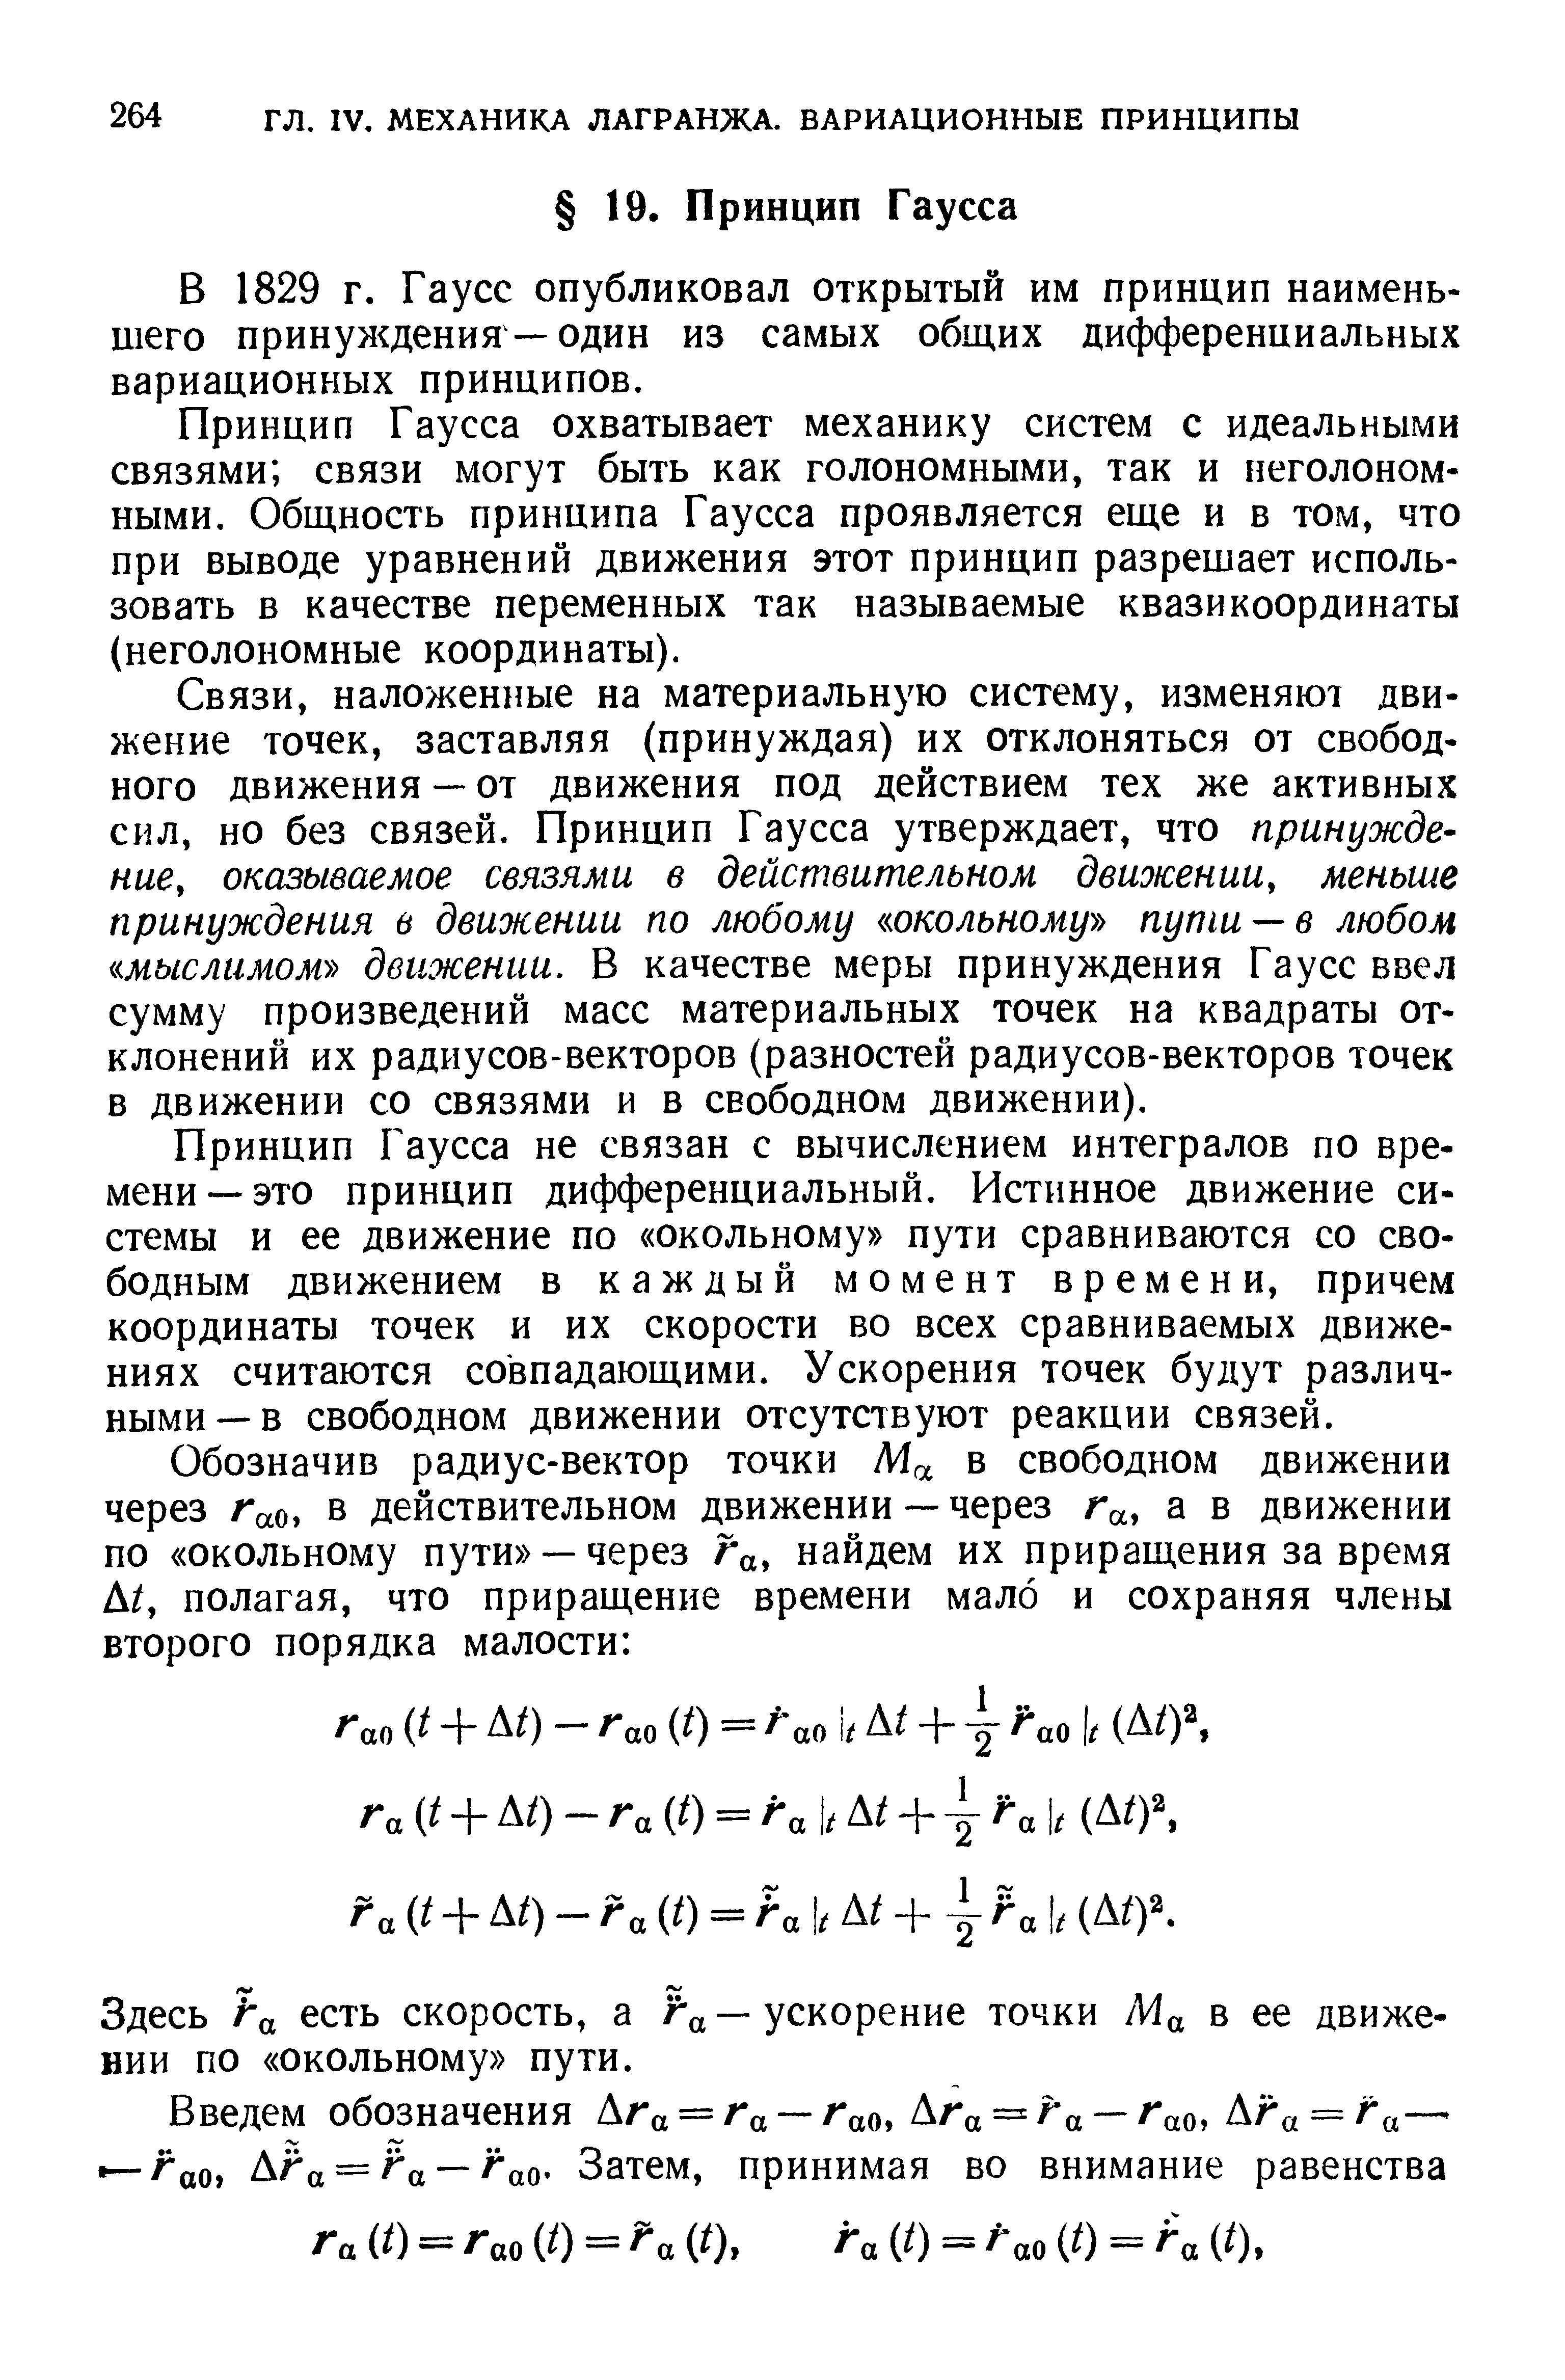 В 1829 г. Гаусс опубликовал открытый им принцип наименьшего принуледения — один из самых обш их дифференциальных вариационных принципов.
